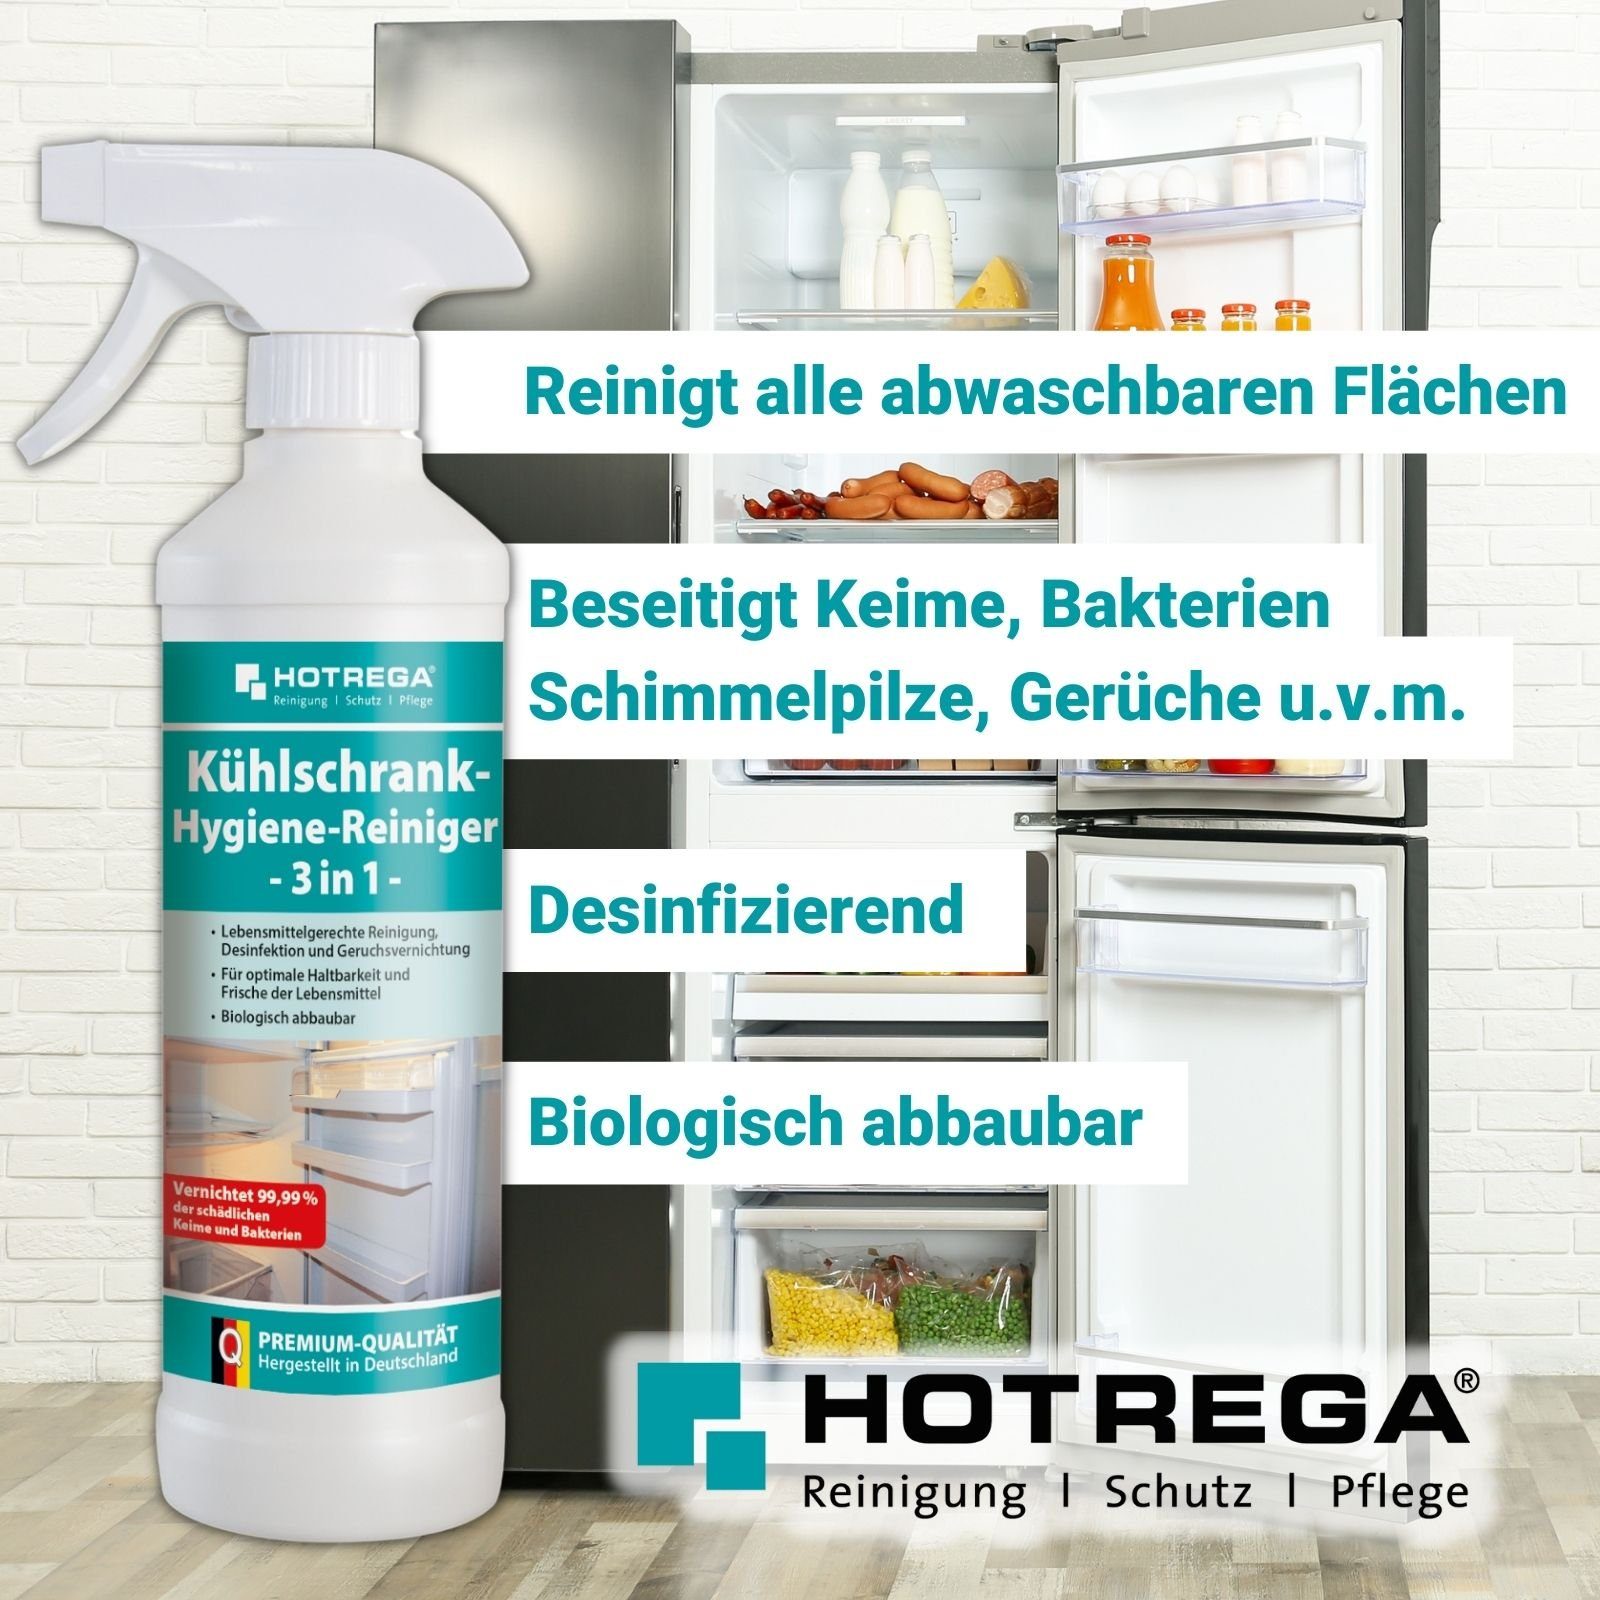 3in1 Küchenreiniger HOTREGA® HOTREGA Kühlschrank 500ml Hygienereiniger Microfasertuch inkl